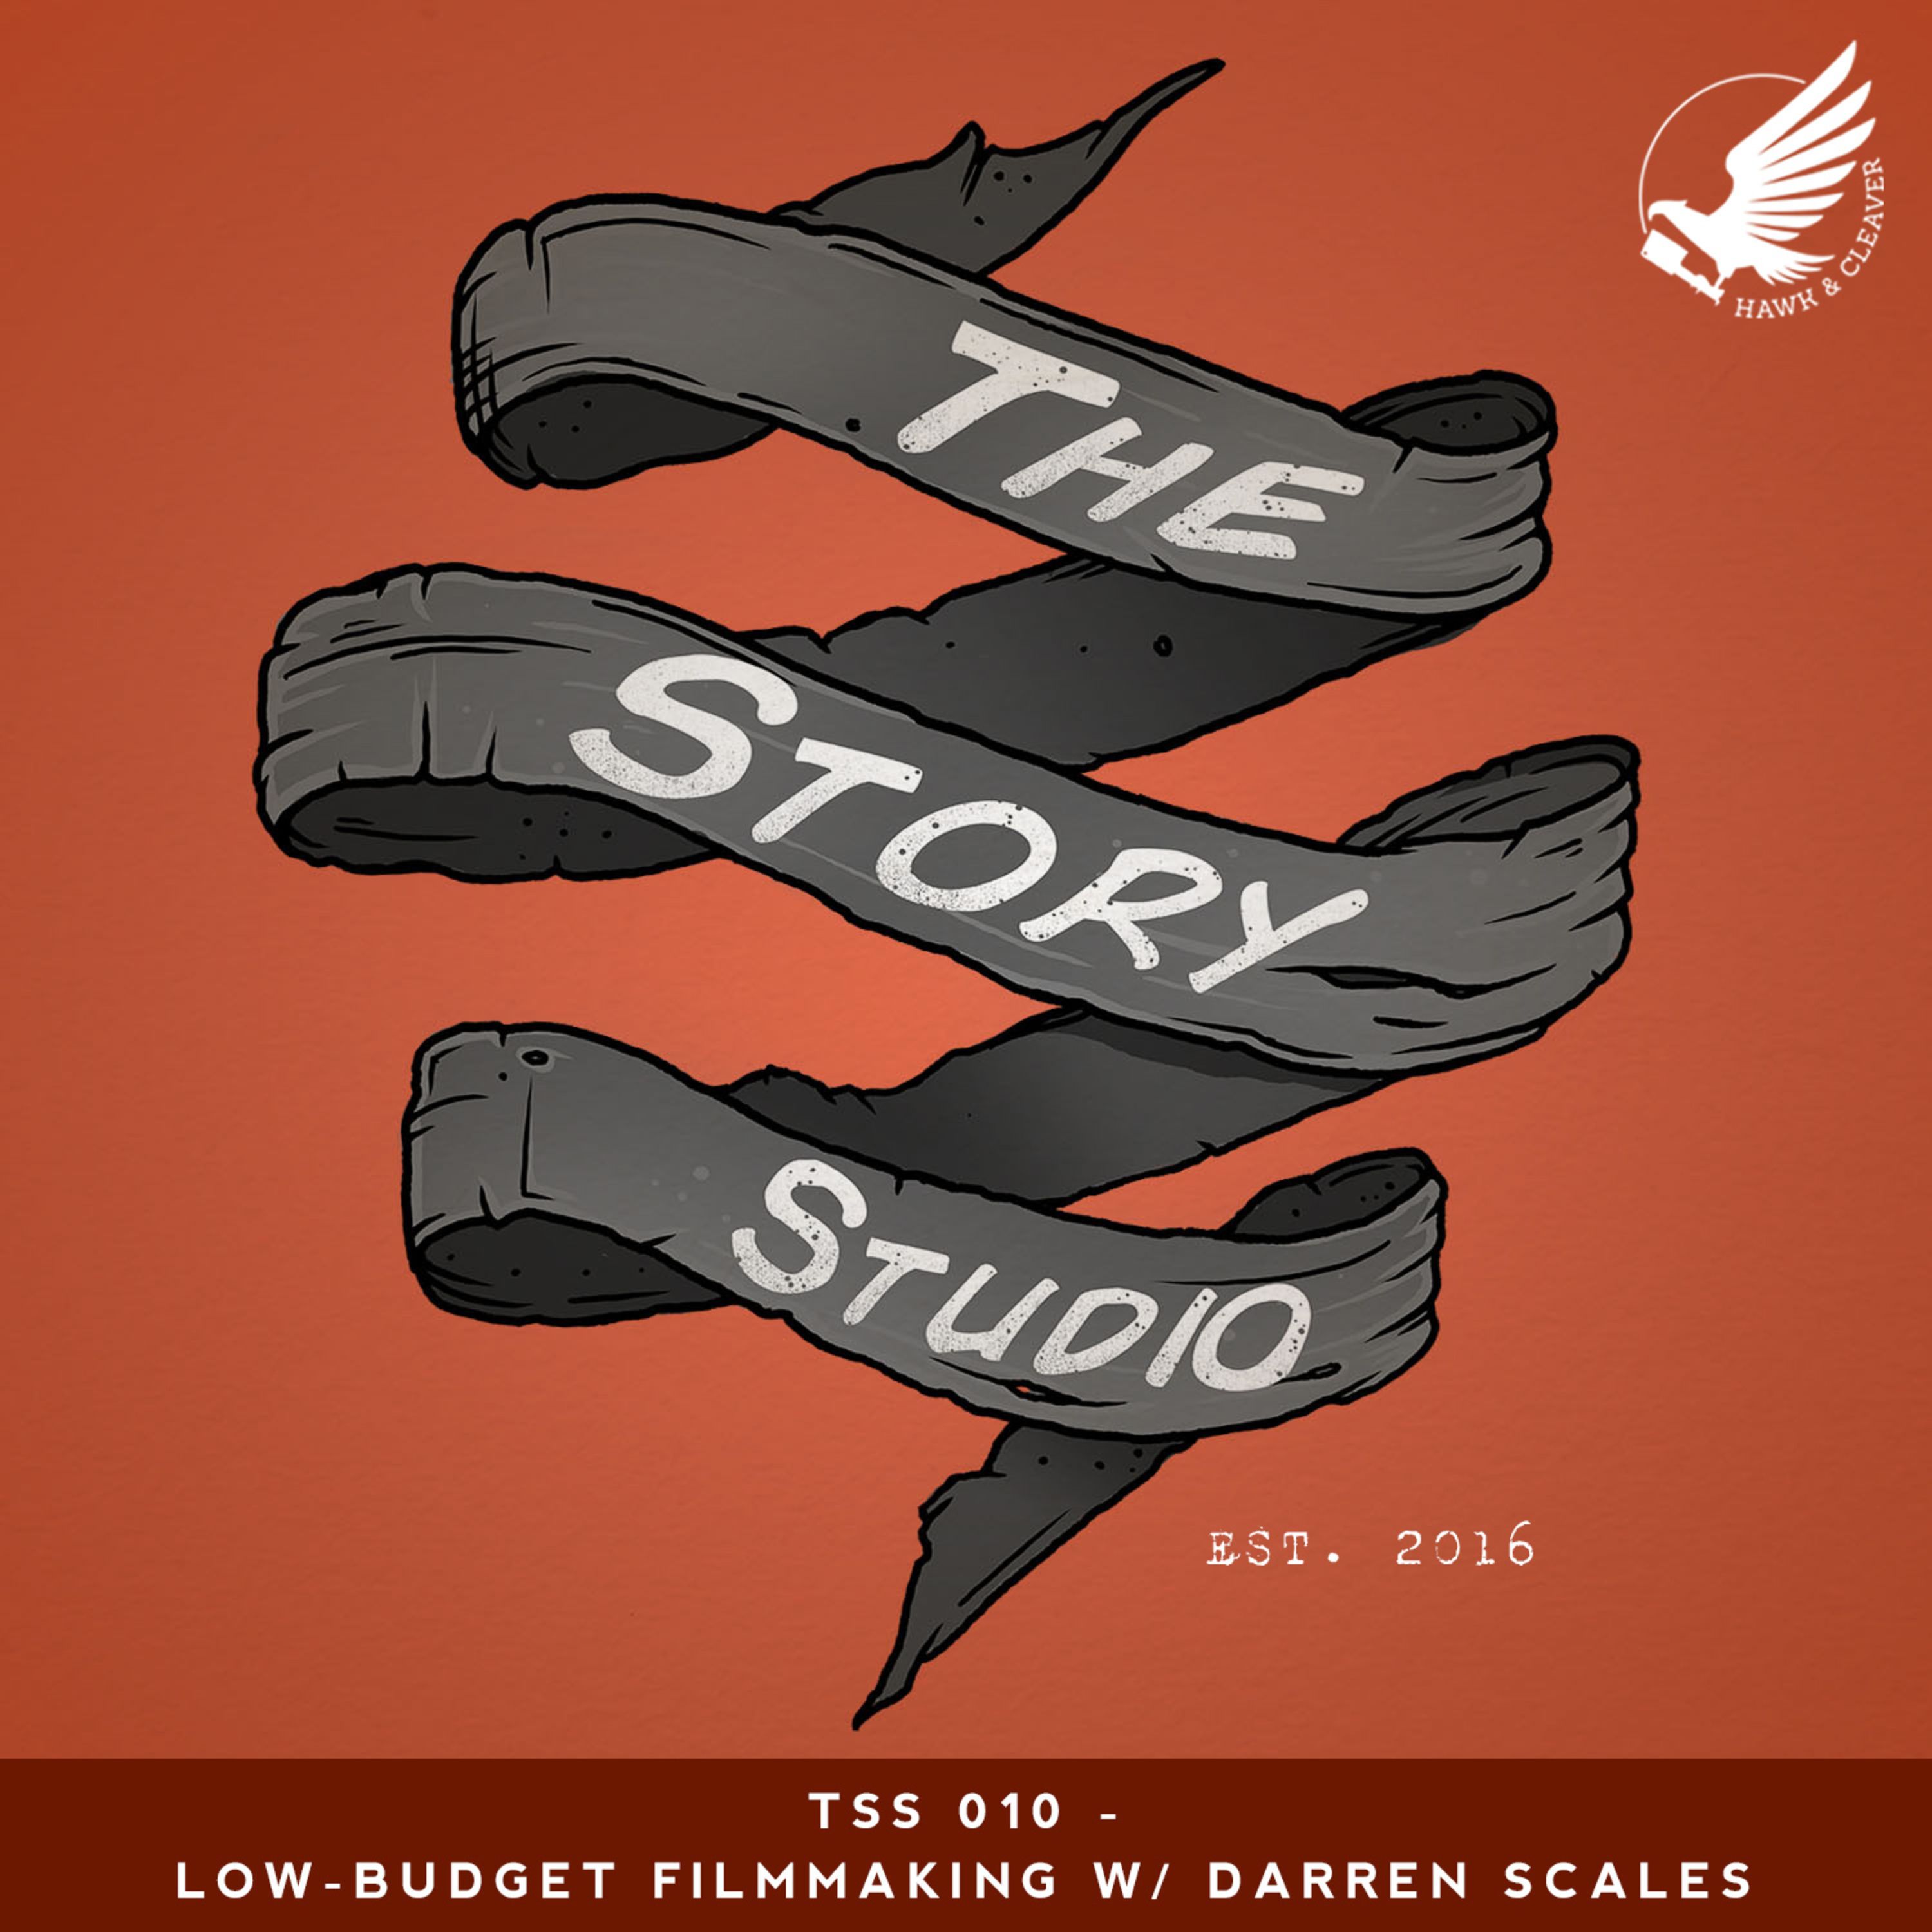 TSS 010 - Low-Budget Filmmaking W/ Darren Scales